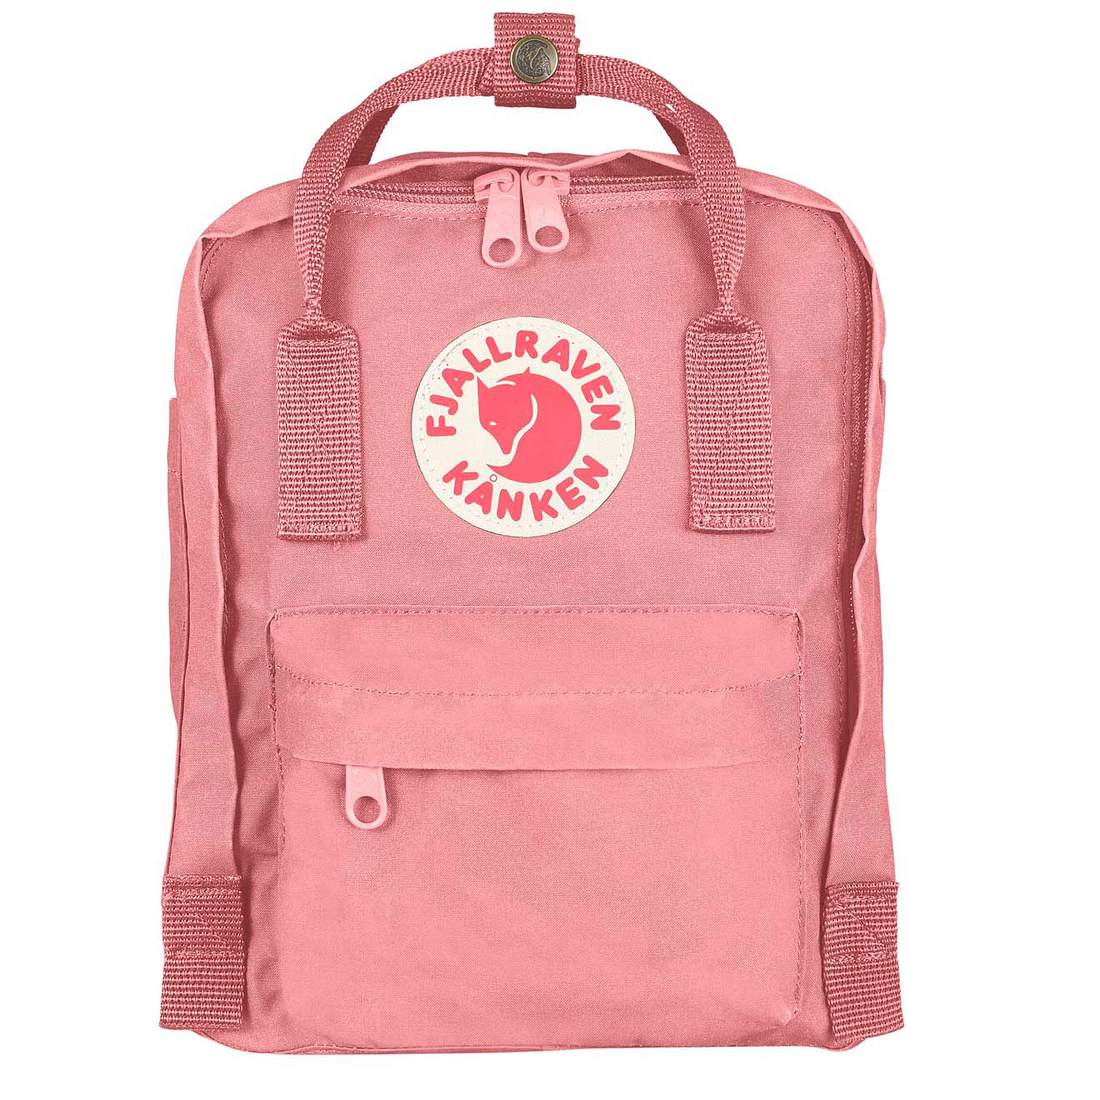 Die coolsten Rucksäcke für die Schule Fjällräven Kanken rosa